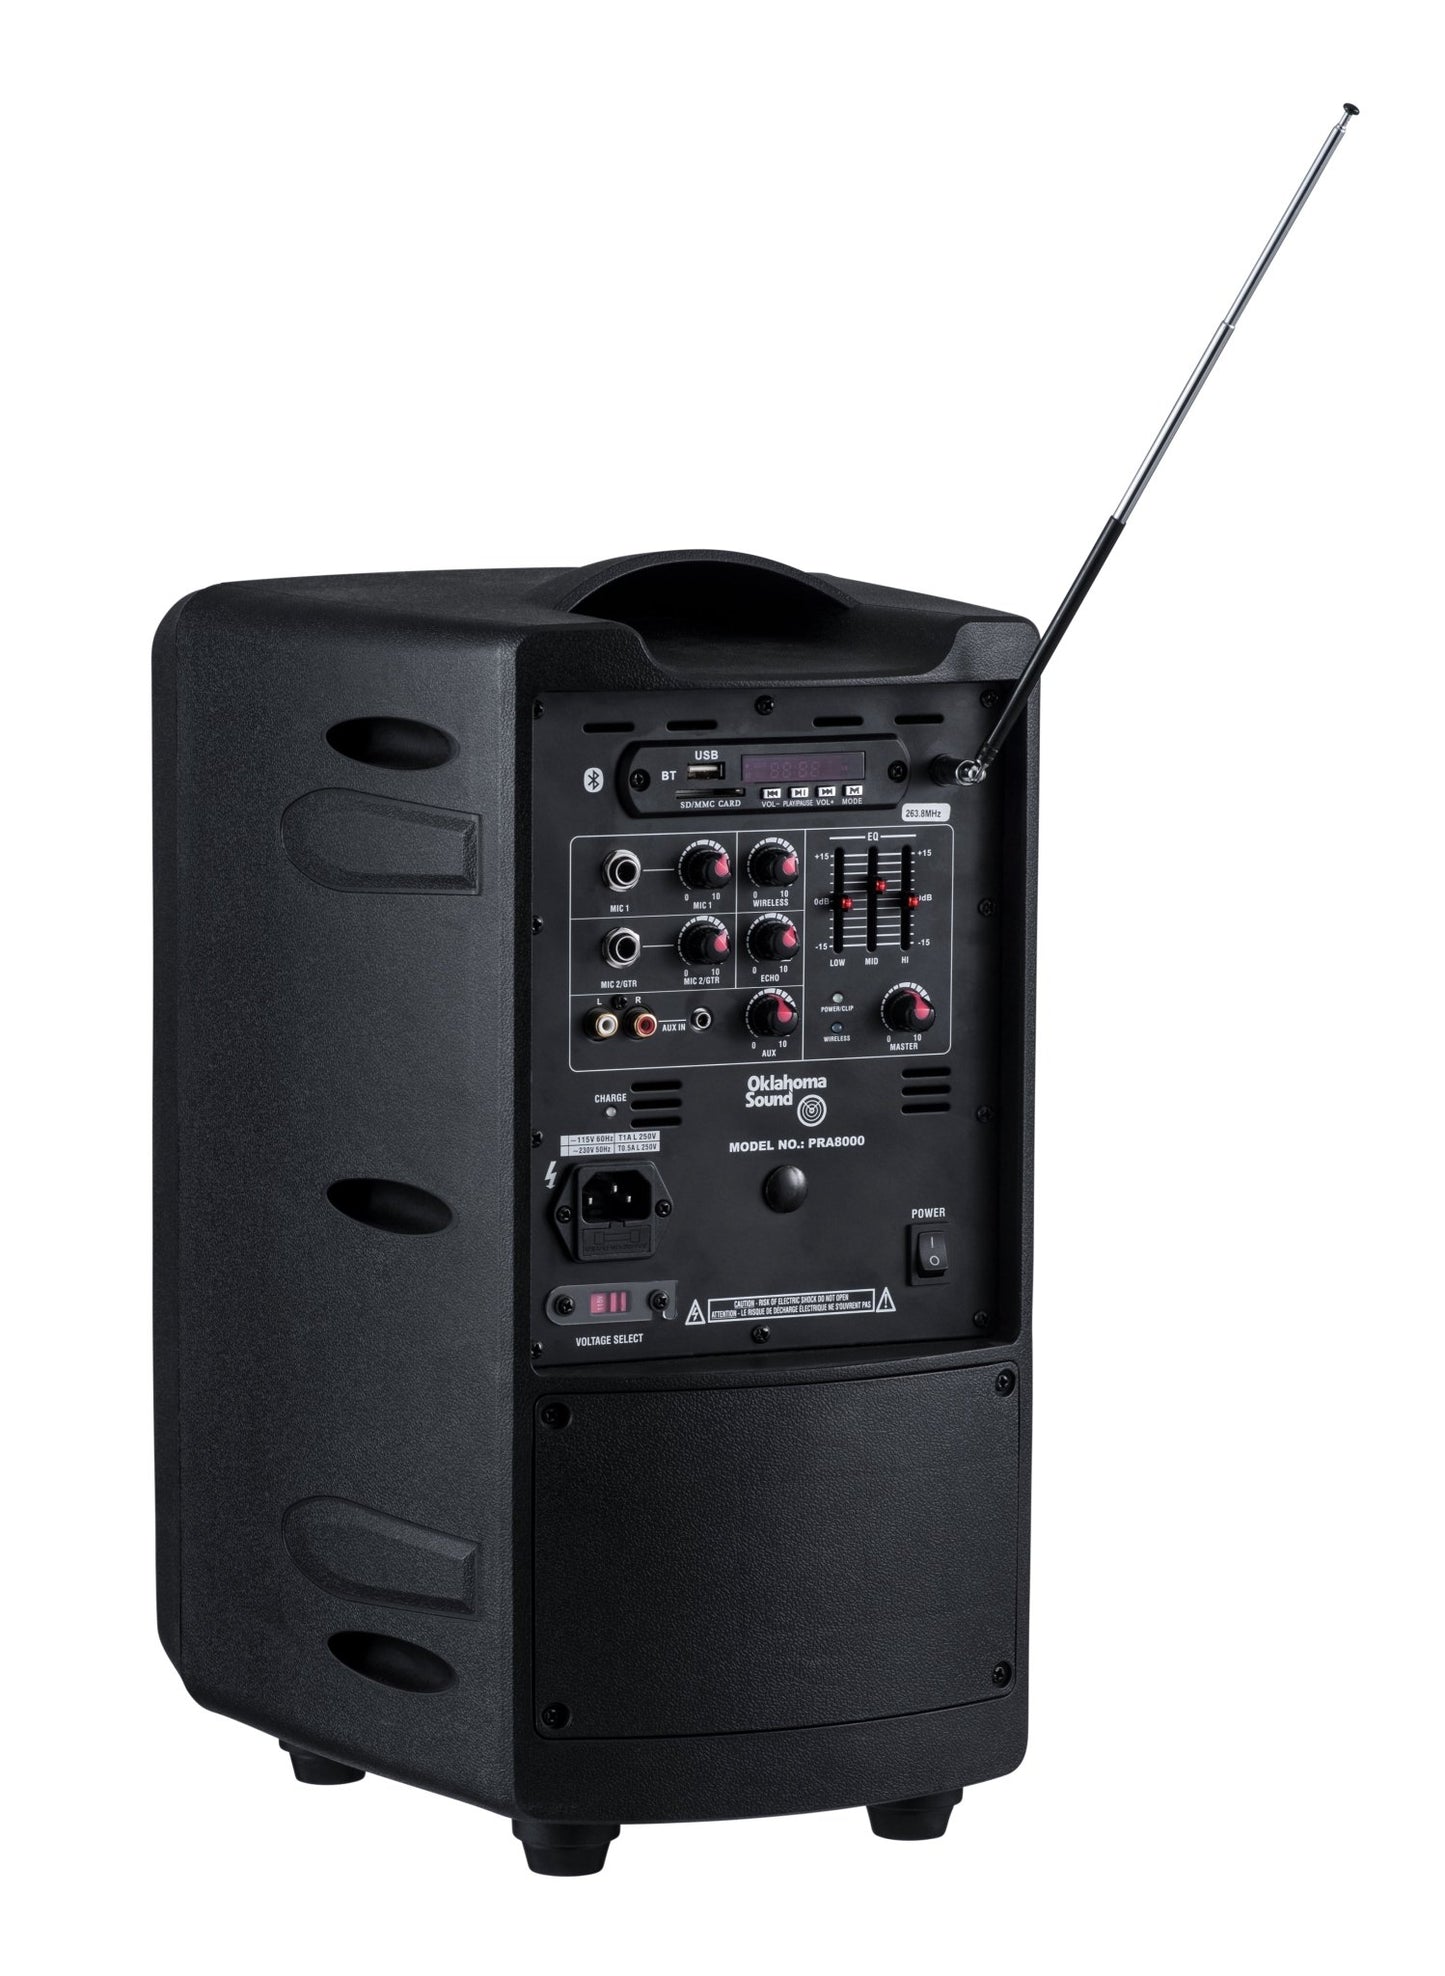 Oklahoma Sound - PRA-8000-PRA8-6 - 40 Watt Wireless PA System w/ Wireless Tie-Clip/Lavalier Mic (Oklahoma Sound OKL-PRA-8000-PRA8-6) - SchoolOutlet